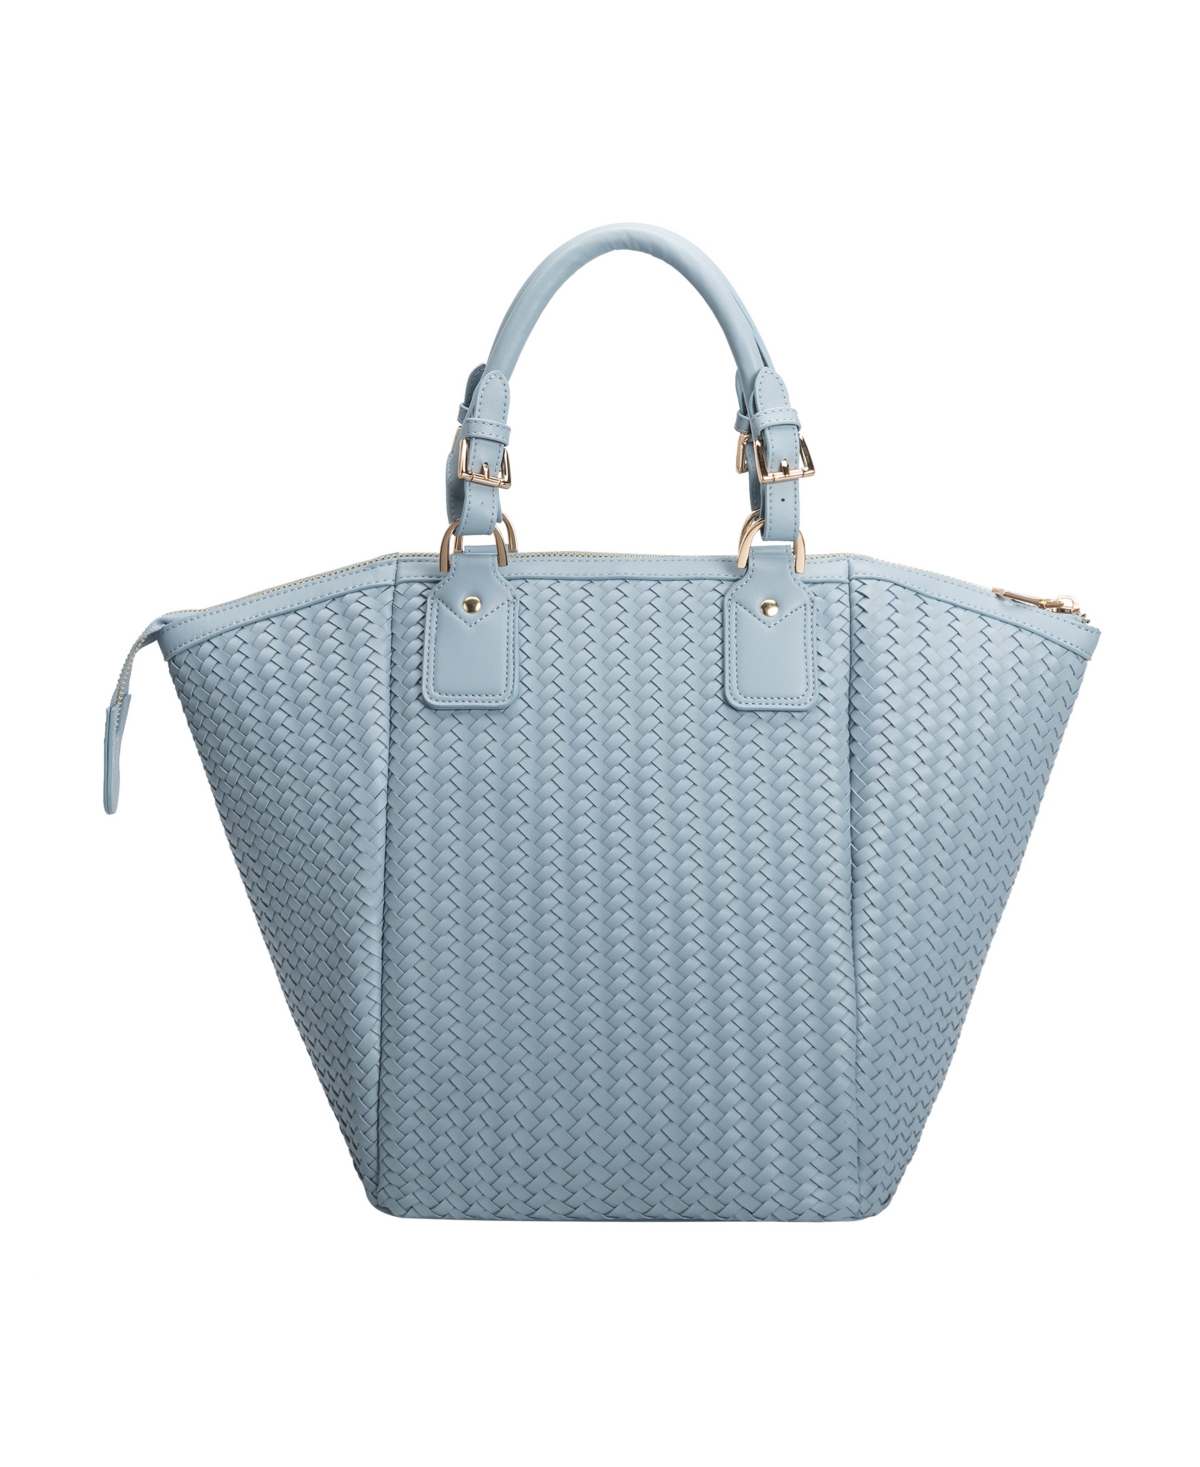 Melie Bianco Women's Valerie Top Handle Bag In Baby Blue